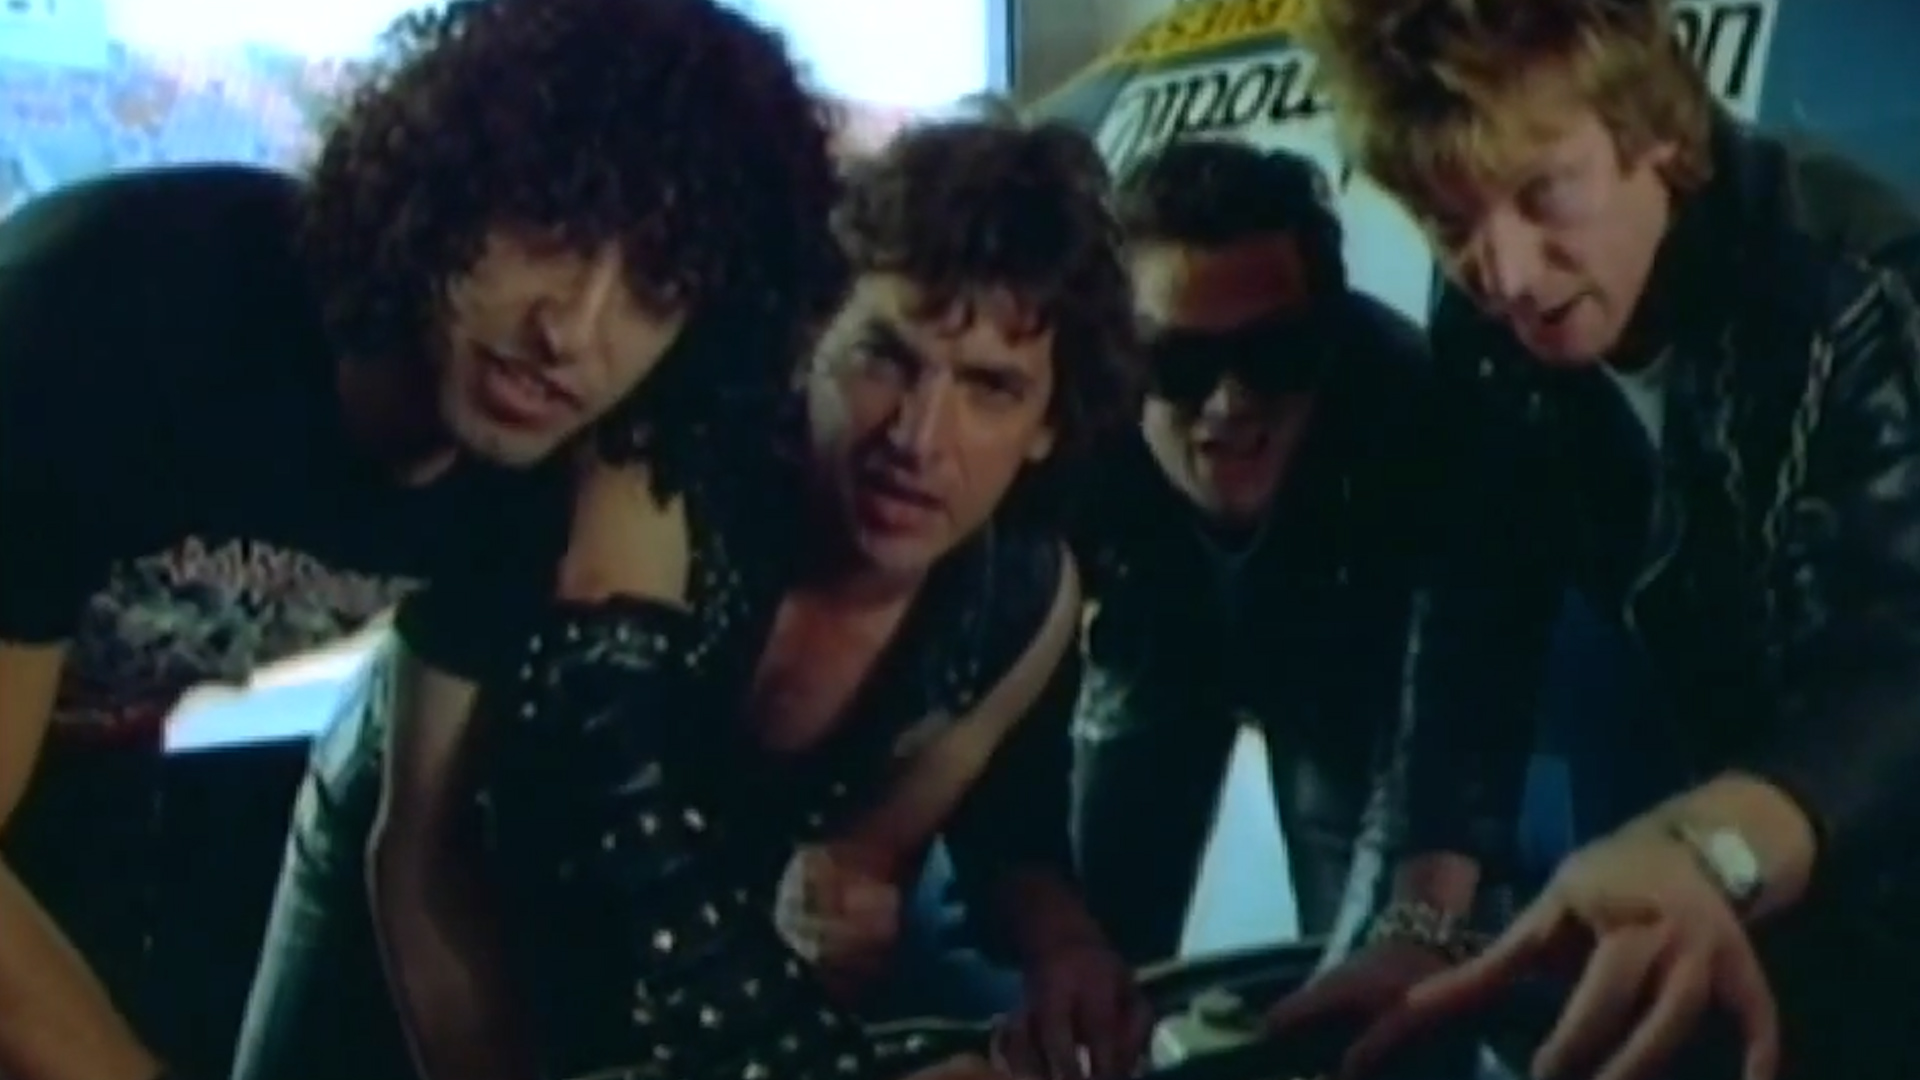 Boff, Pappo, Vitico y Michel en el Autódromo. Las imágenes se vieron en la película Barock de 1982 mientras tocaban Pantalla del Mundo Nuevo